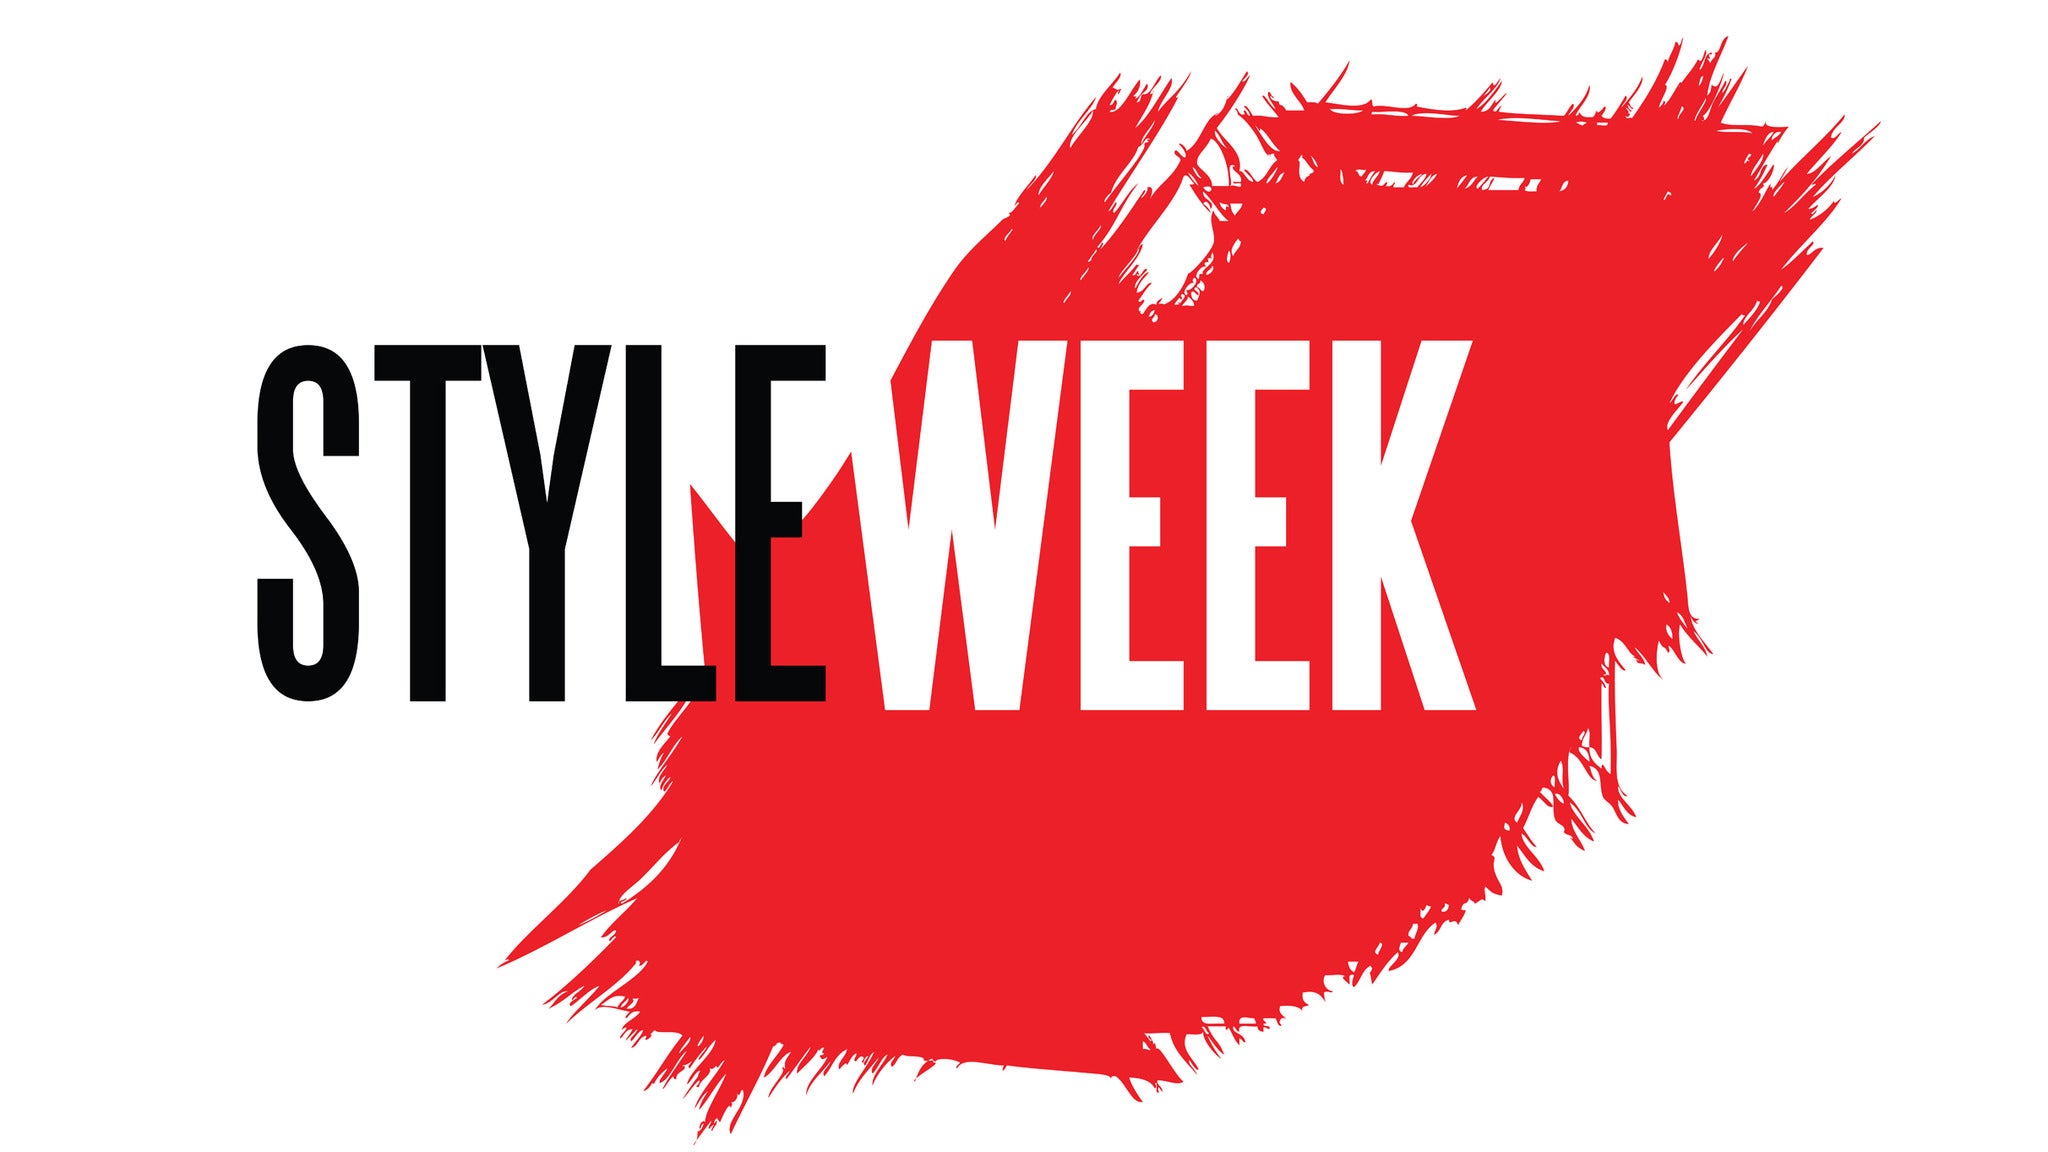 Styleweek Northeast